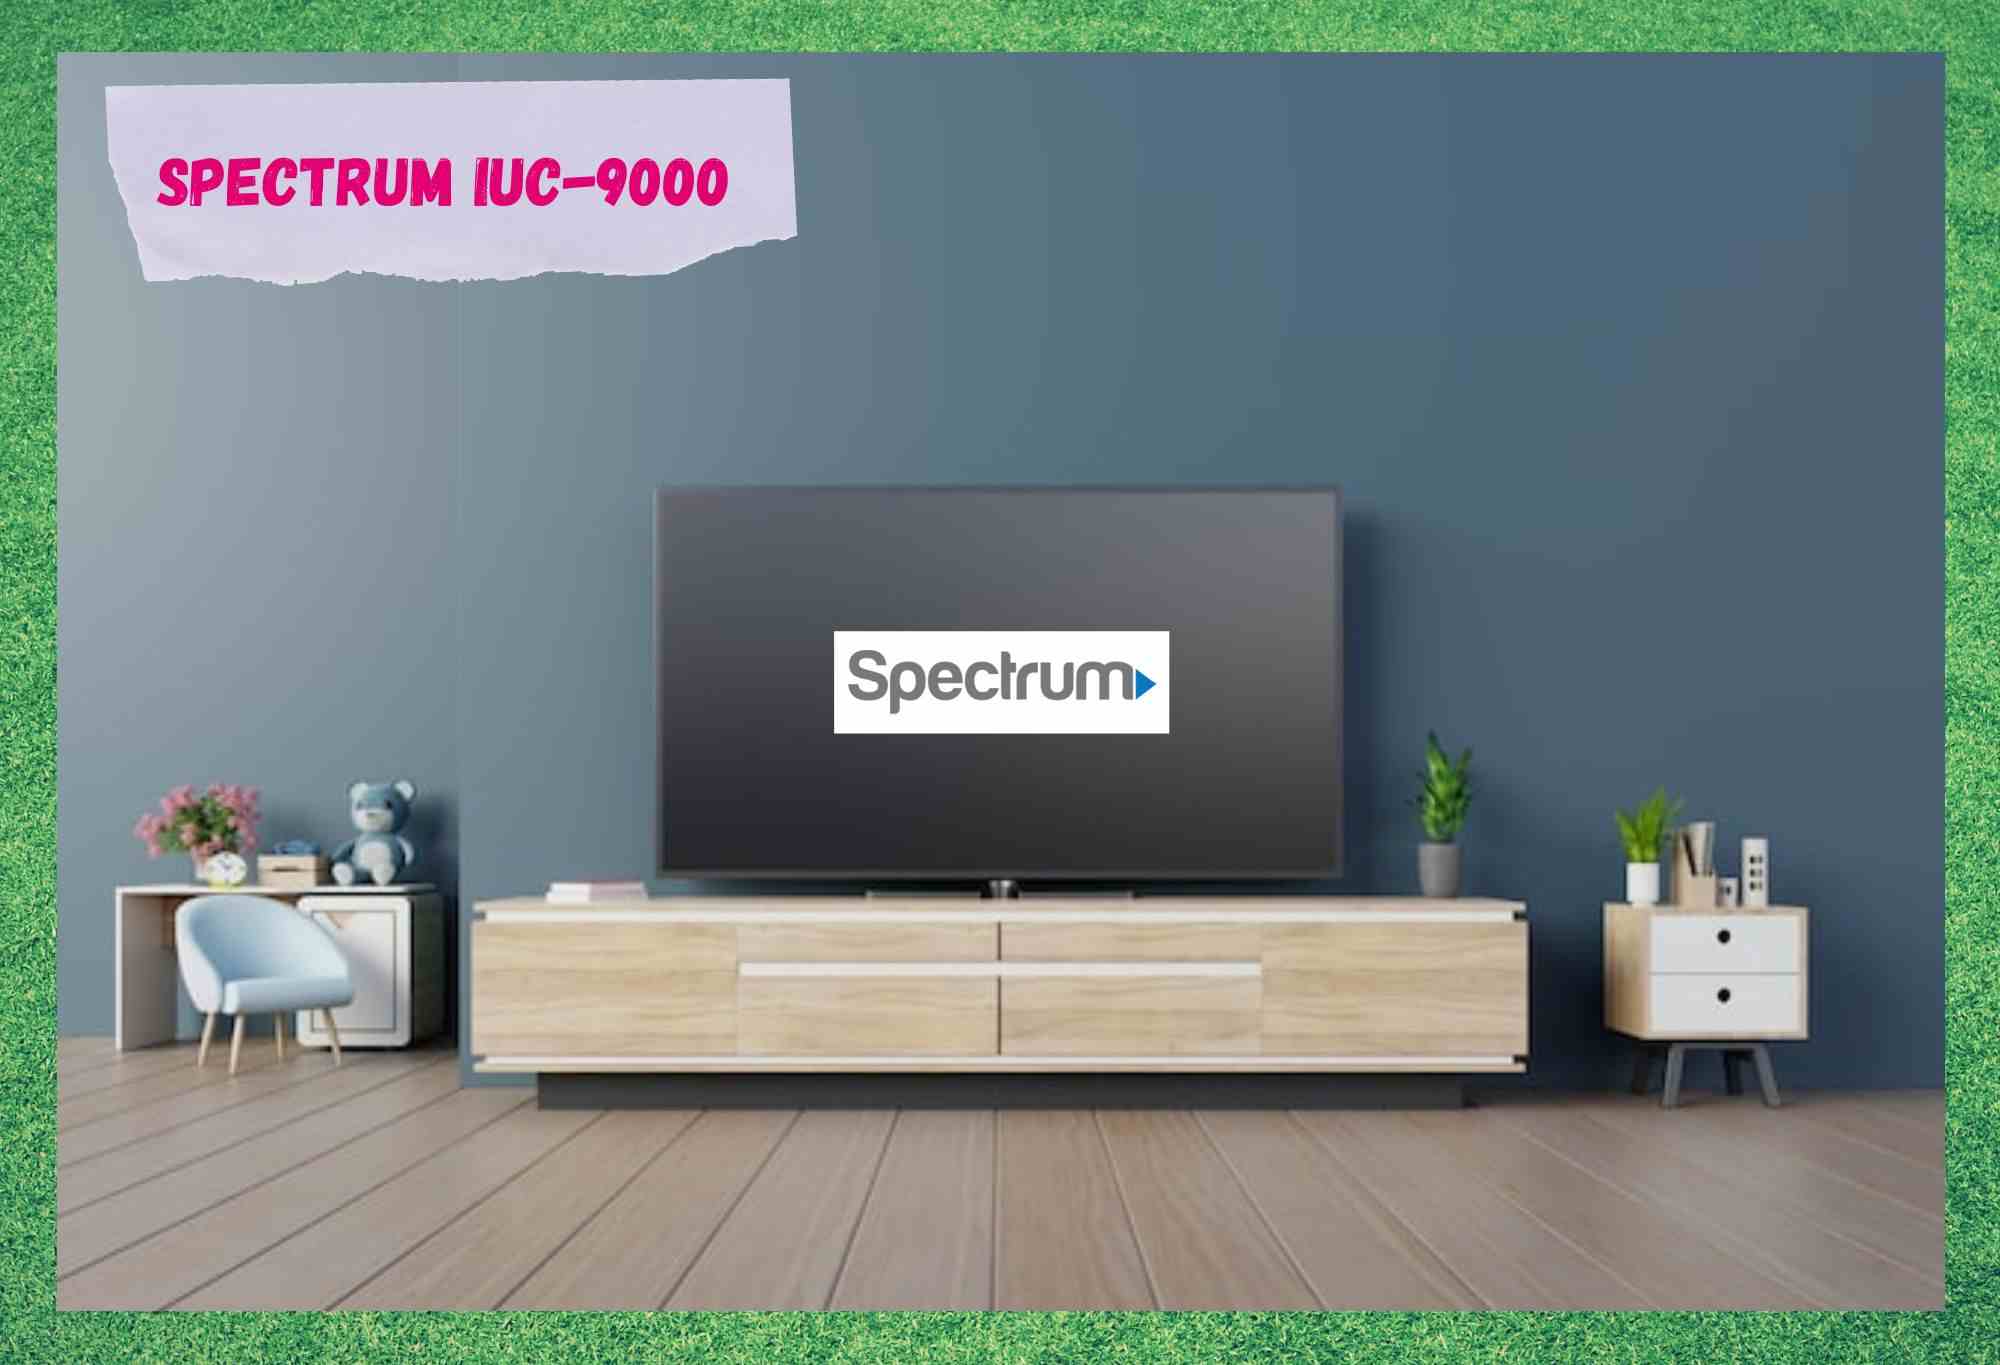 spectrum iuc-9000